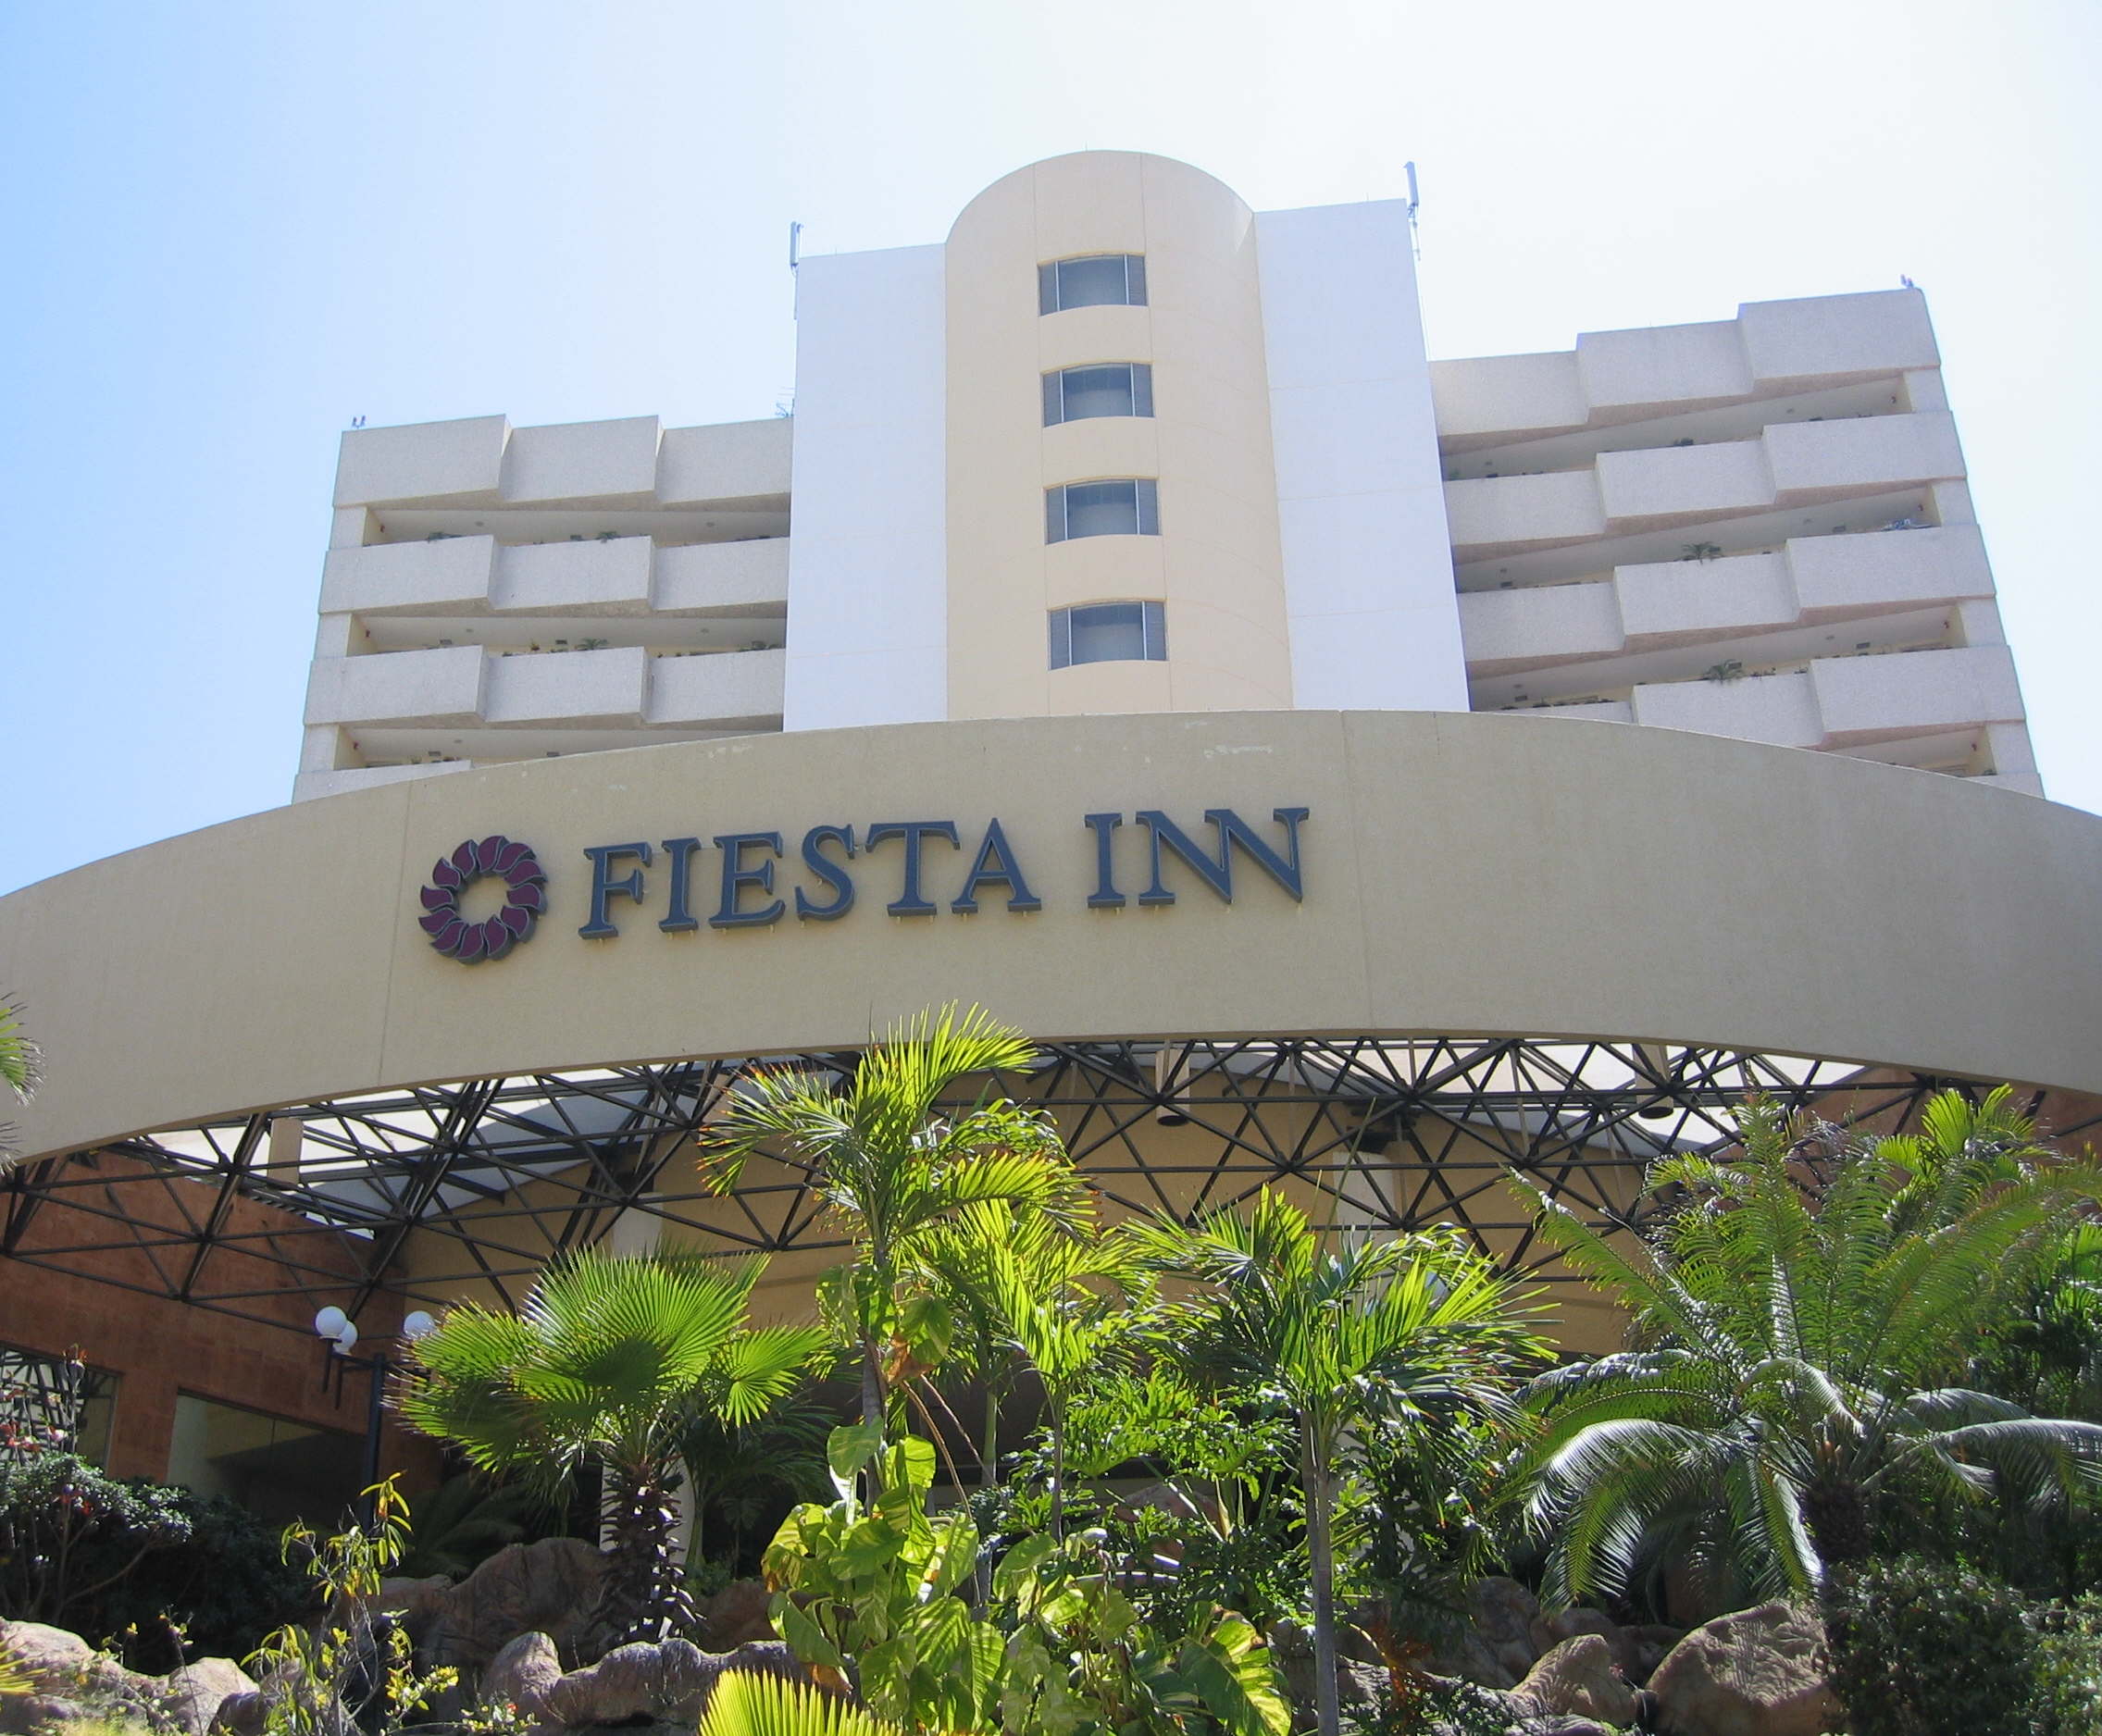 Fiesta Inn1.jpg